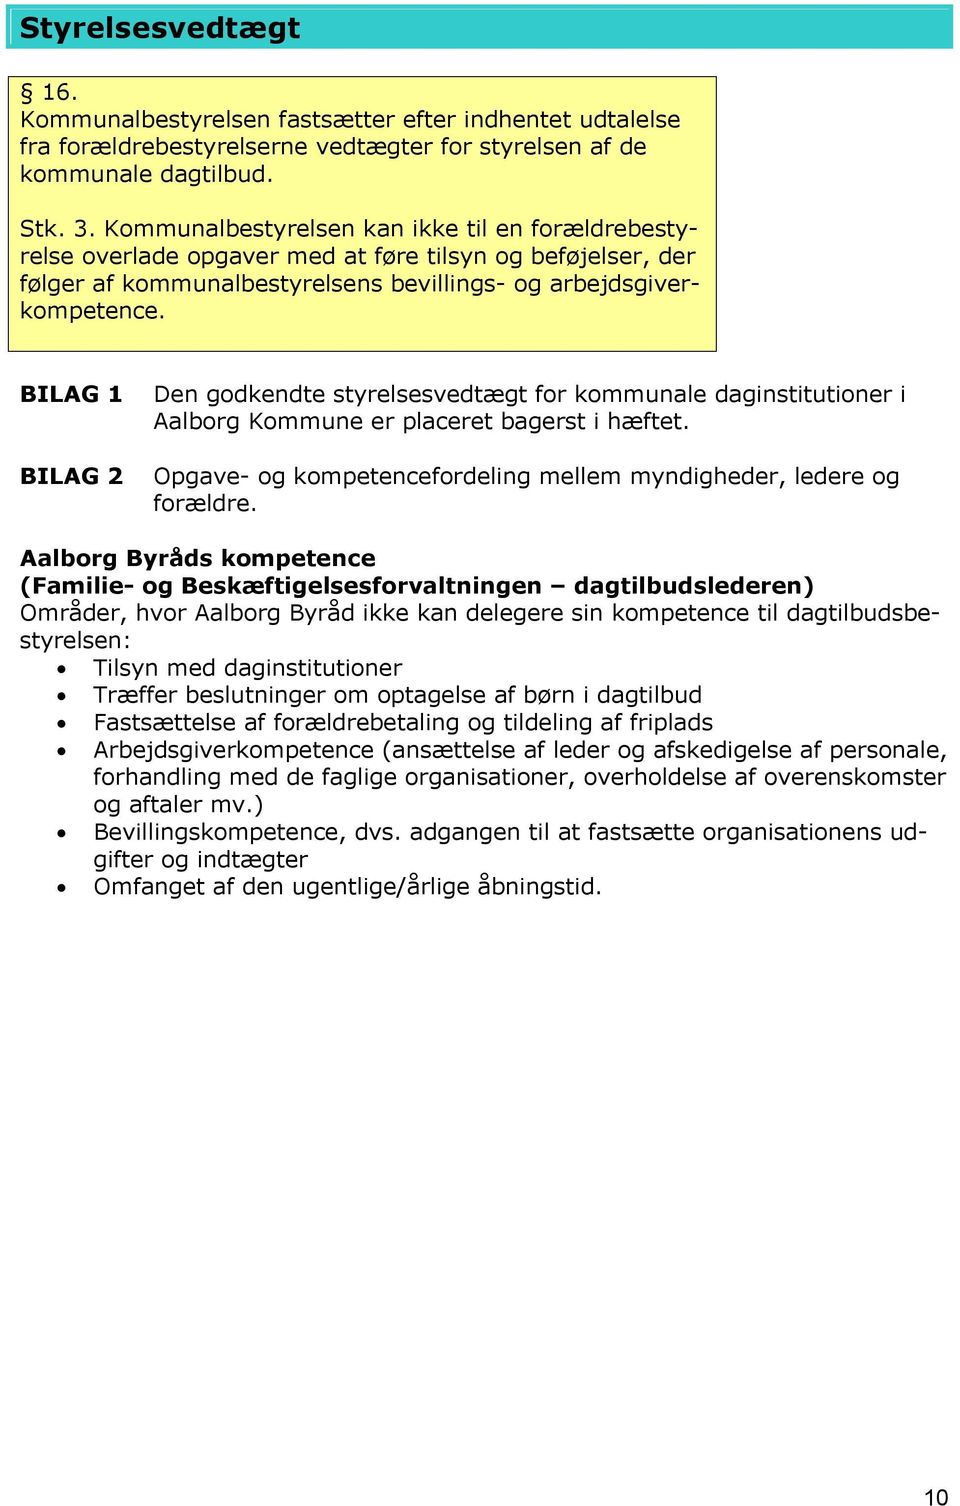 BILAG 1 BILAG 2 Den godkendte styrelsesvedtægt for kommunale daginstitutioner i Aalborg Kommune er placeret bagerst i hæftet. Opgave- og kompetencefordeling mellem myndigheder, ledere og forældre.